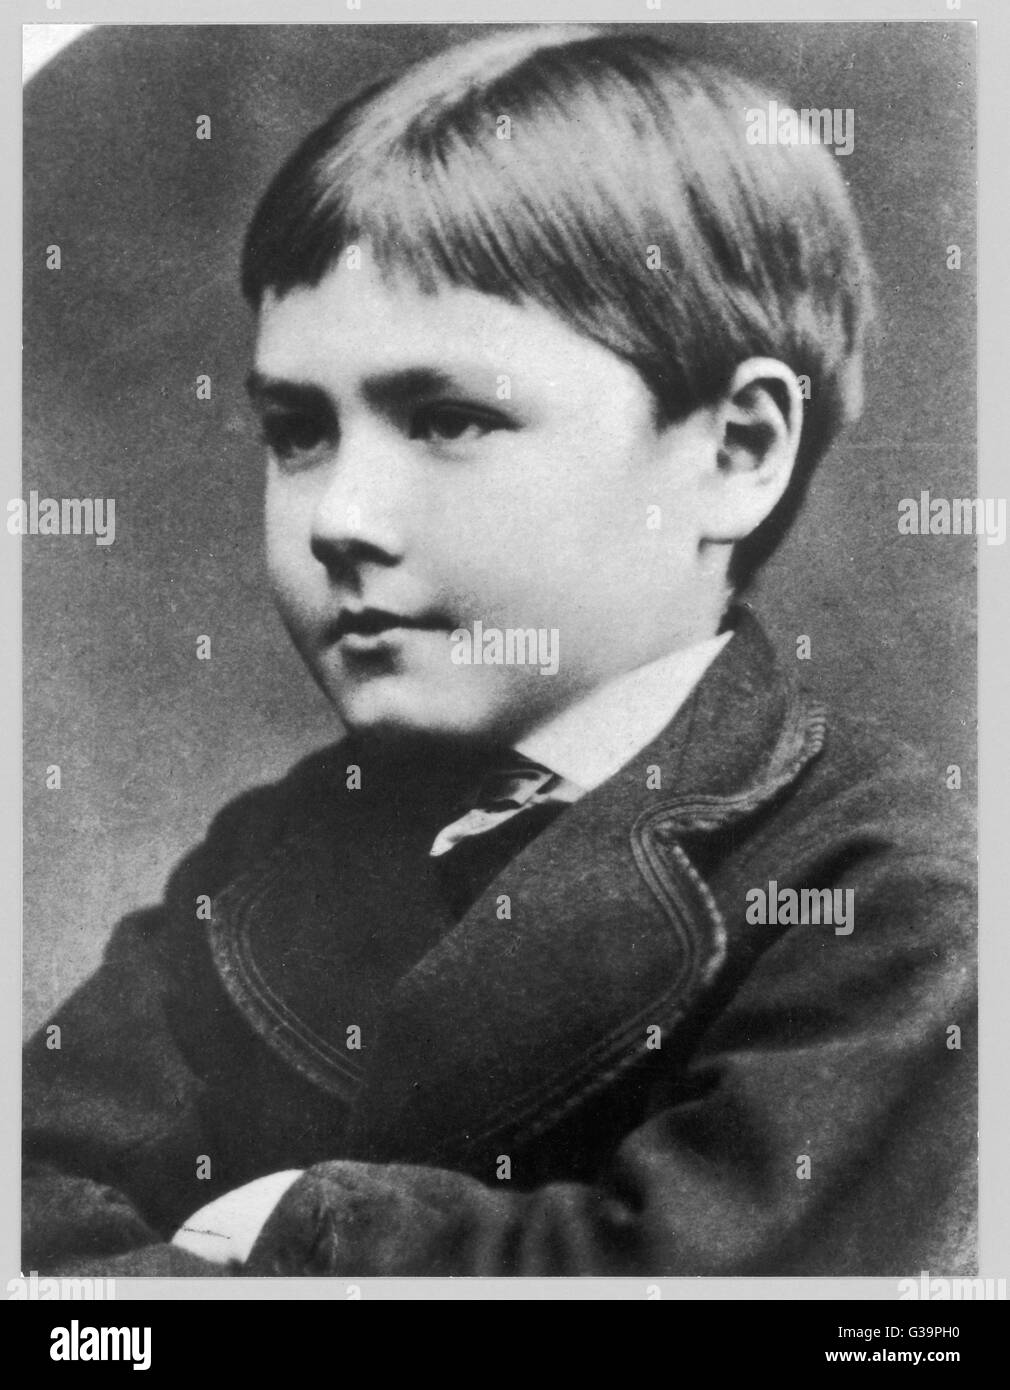 Englische Schriftsteller Rudyard Kipling (1865-1936), als kleiner Junge.        Datum: ca. 1872 Stockfoto